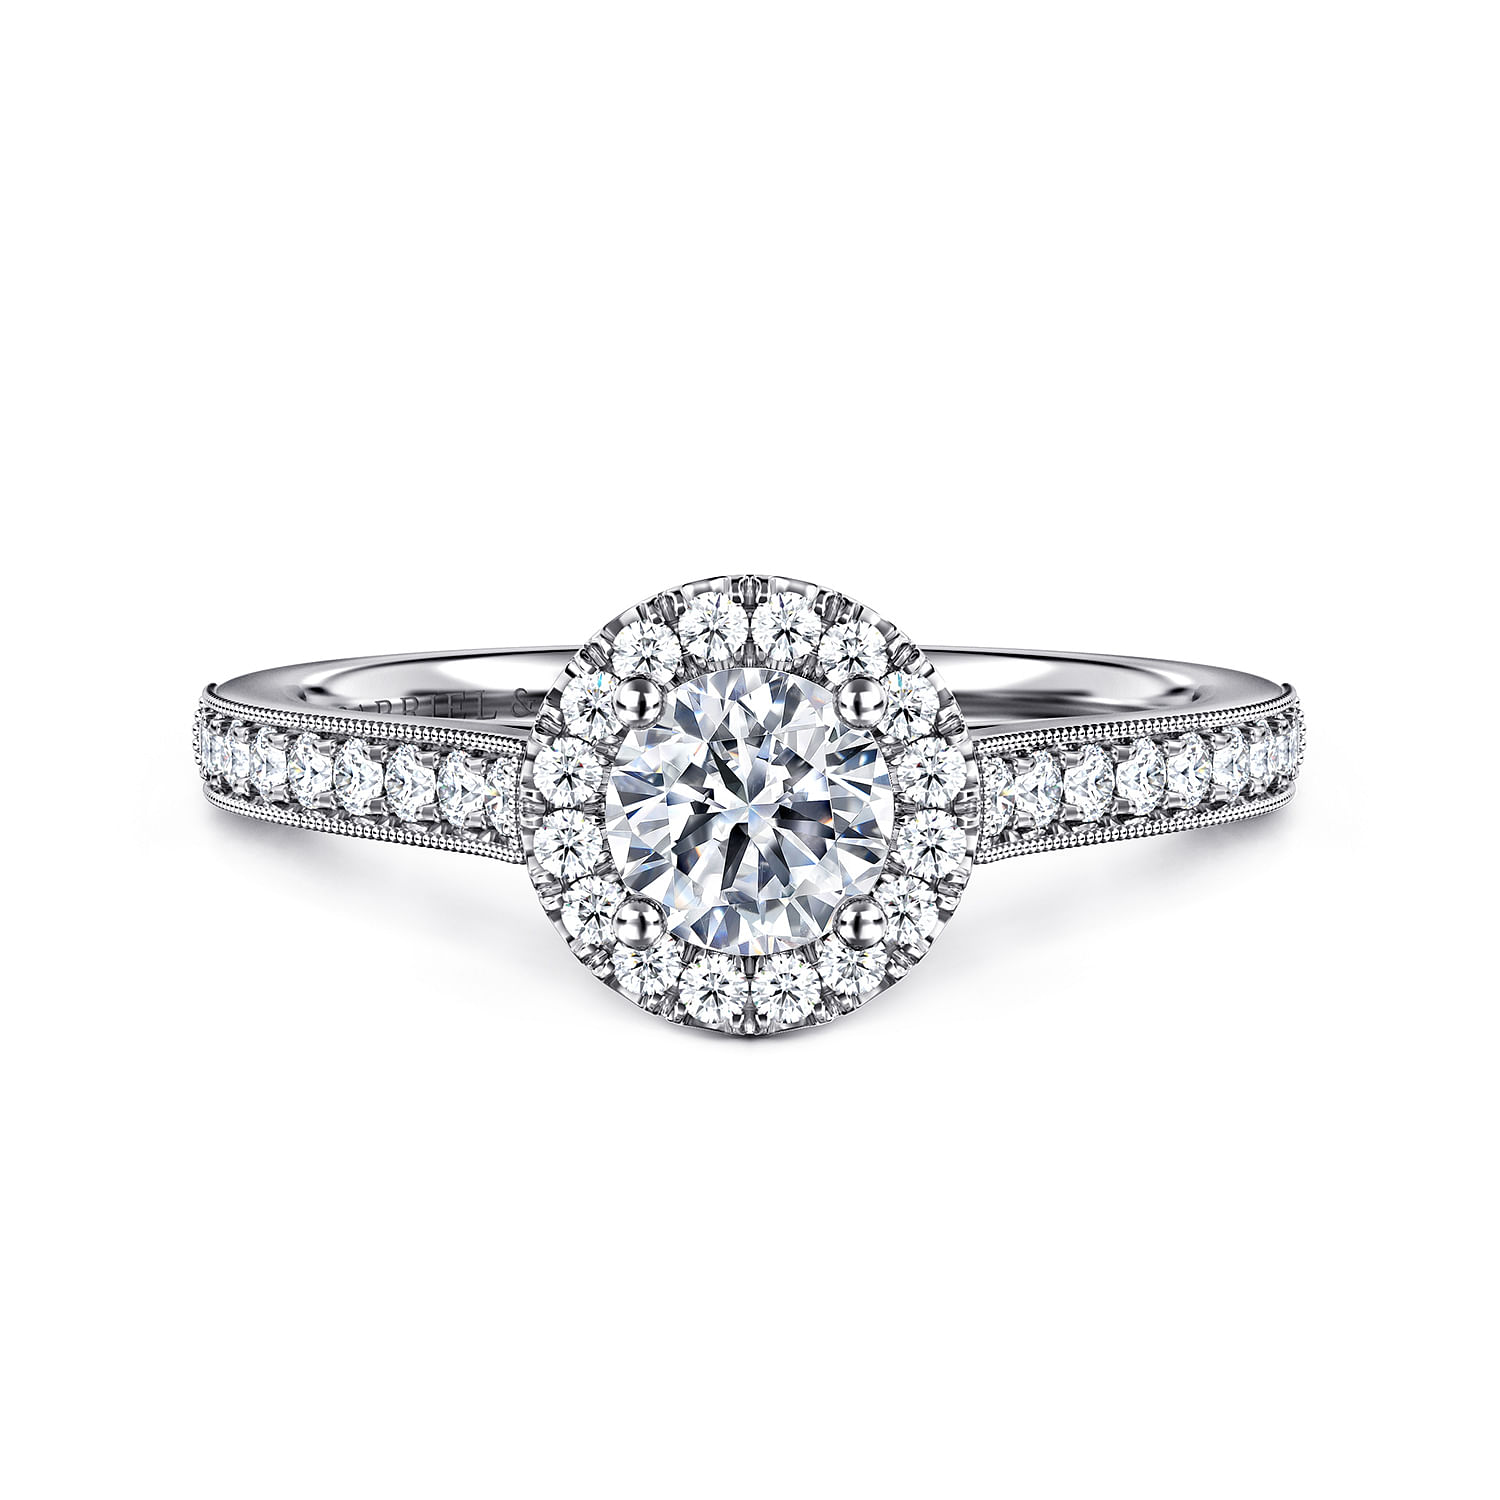 Bernadette - Vintage Inspired 14K White Gold Round Halo Diamond Engagement Ring